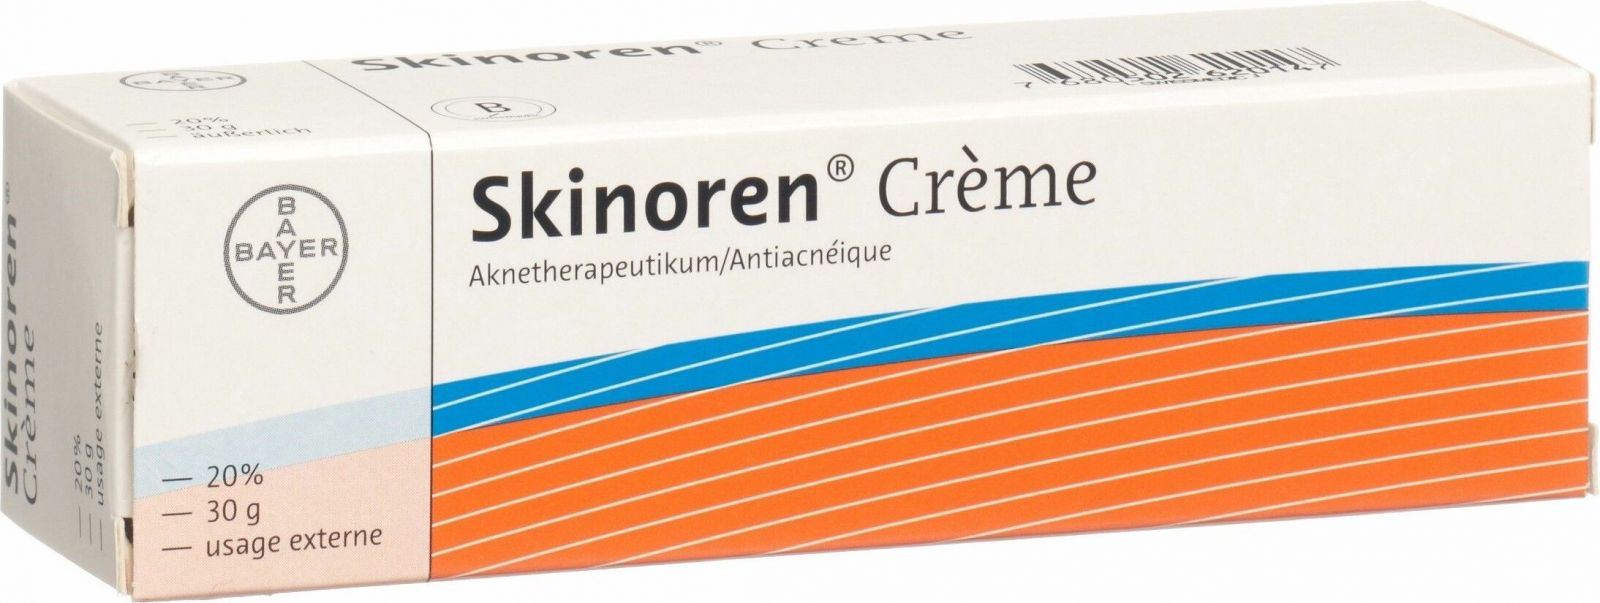 Skinoren cream